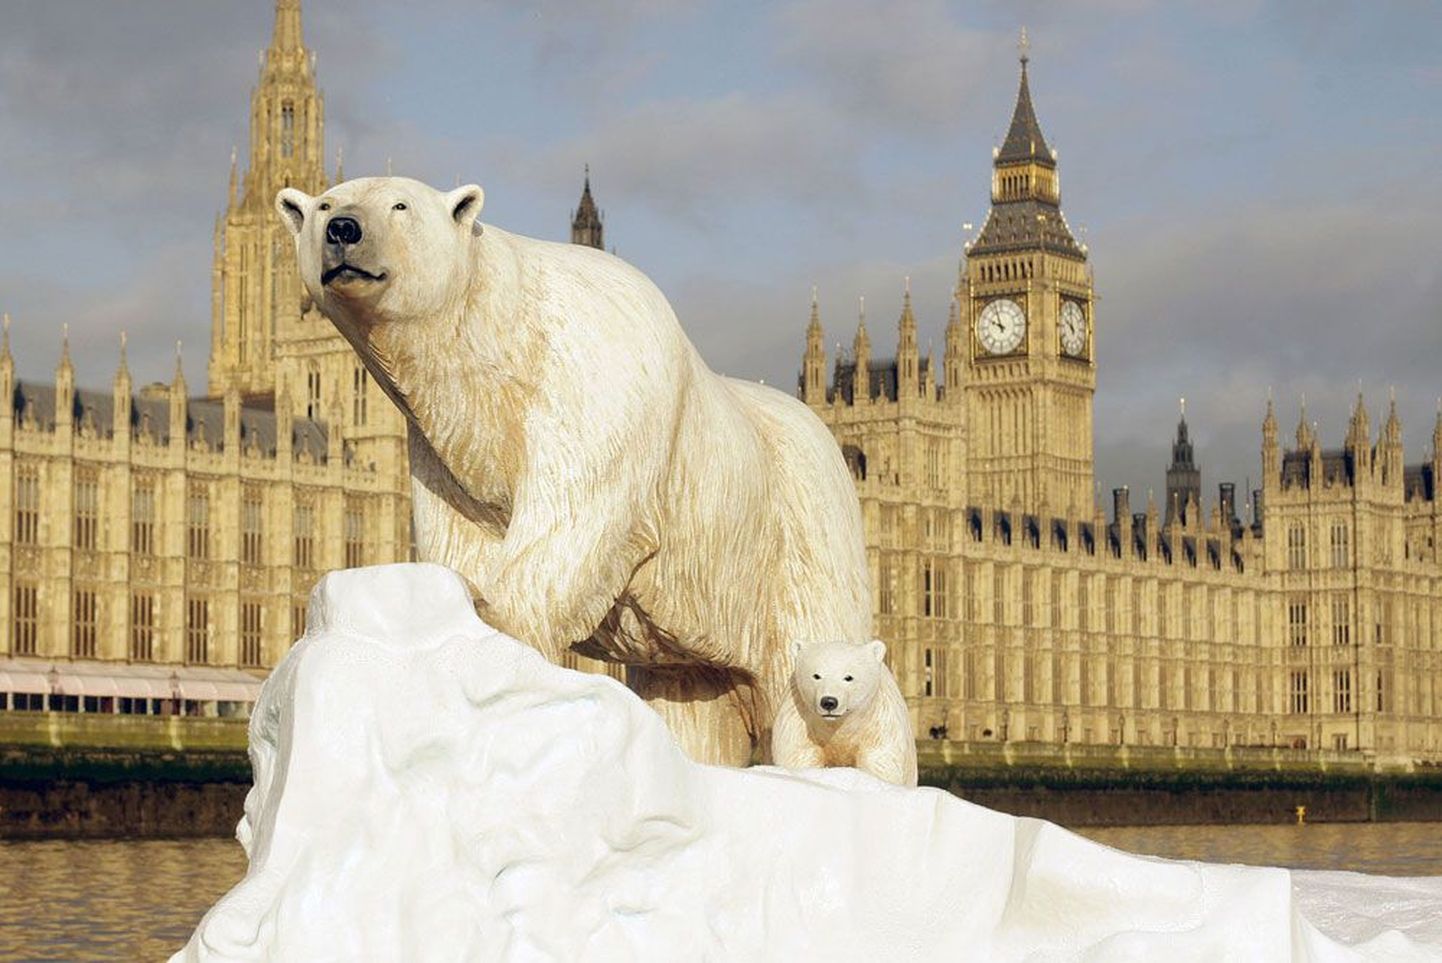 See elusuurune skulptuur jäämäe otsa    lõksu jäänud jääkarust ja karupojast ujus Londonis Thamesi jõel tänavu jaanuaris, et juhtida tähelepanu mandrijää sulamisele. Euroopa Liidu liikmesriigid lubasid eile, et ühendus võtab endale lähiaastatel «õiglase vastutuse» kliimasoojenemise piiramisel.